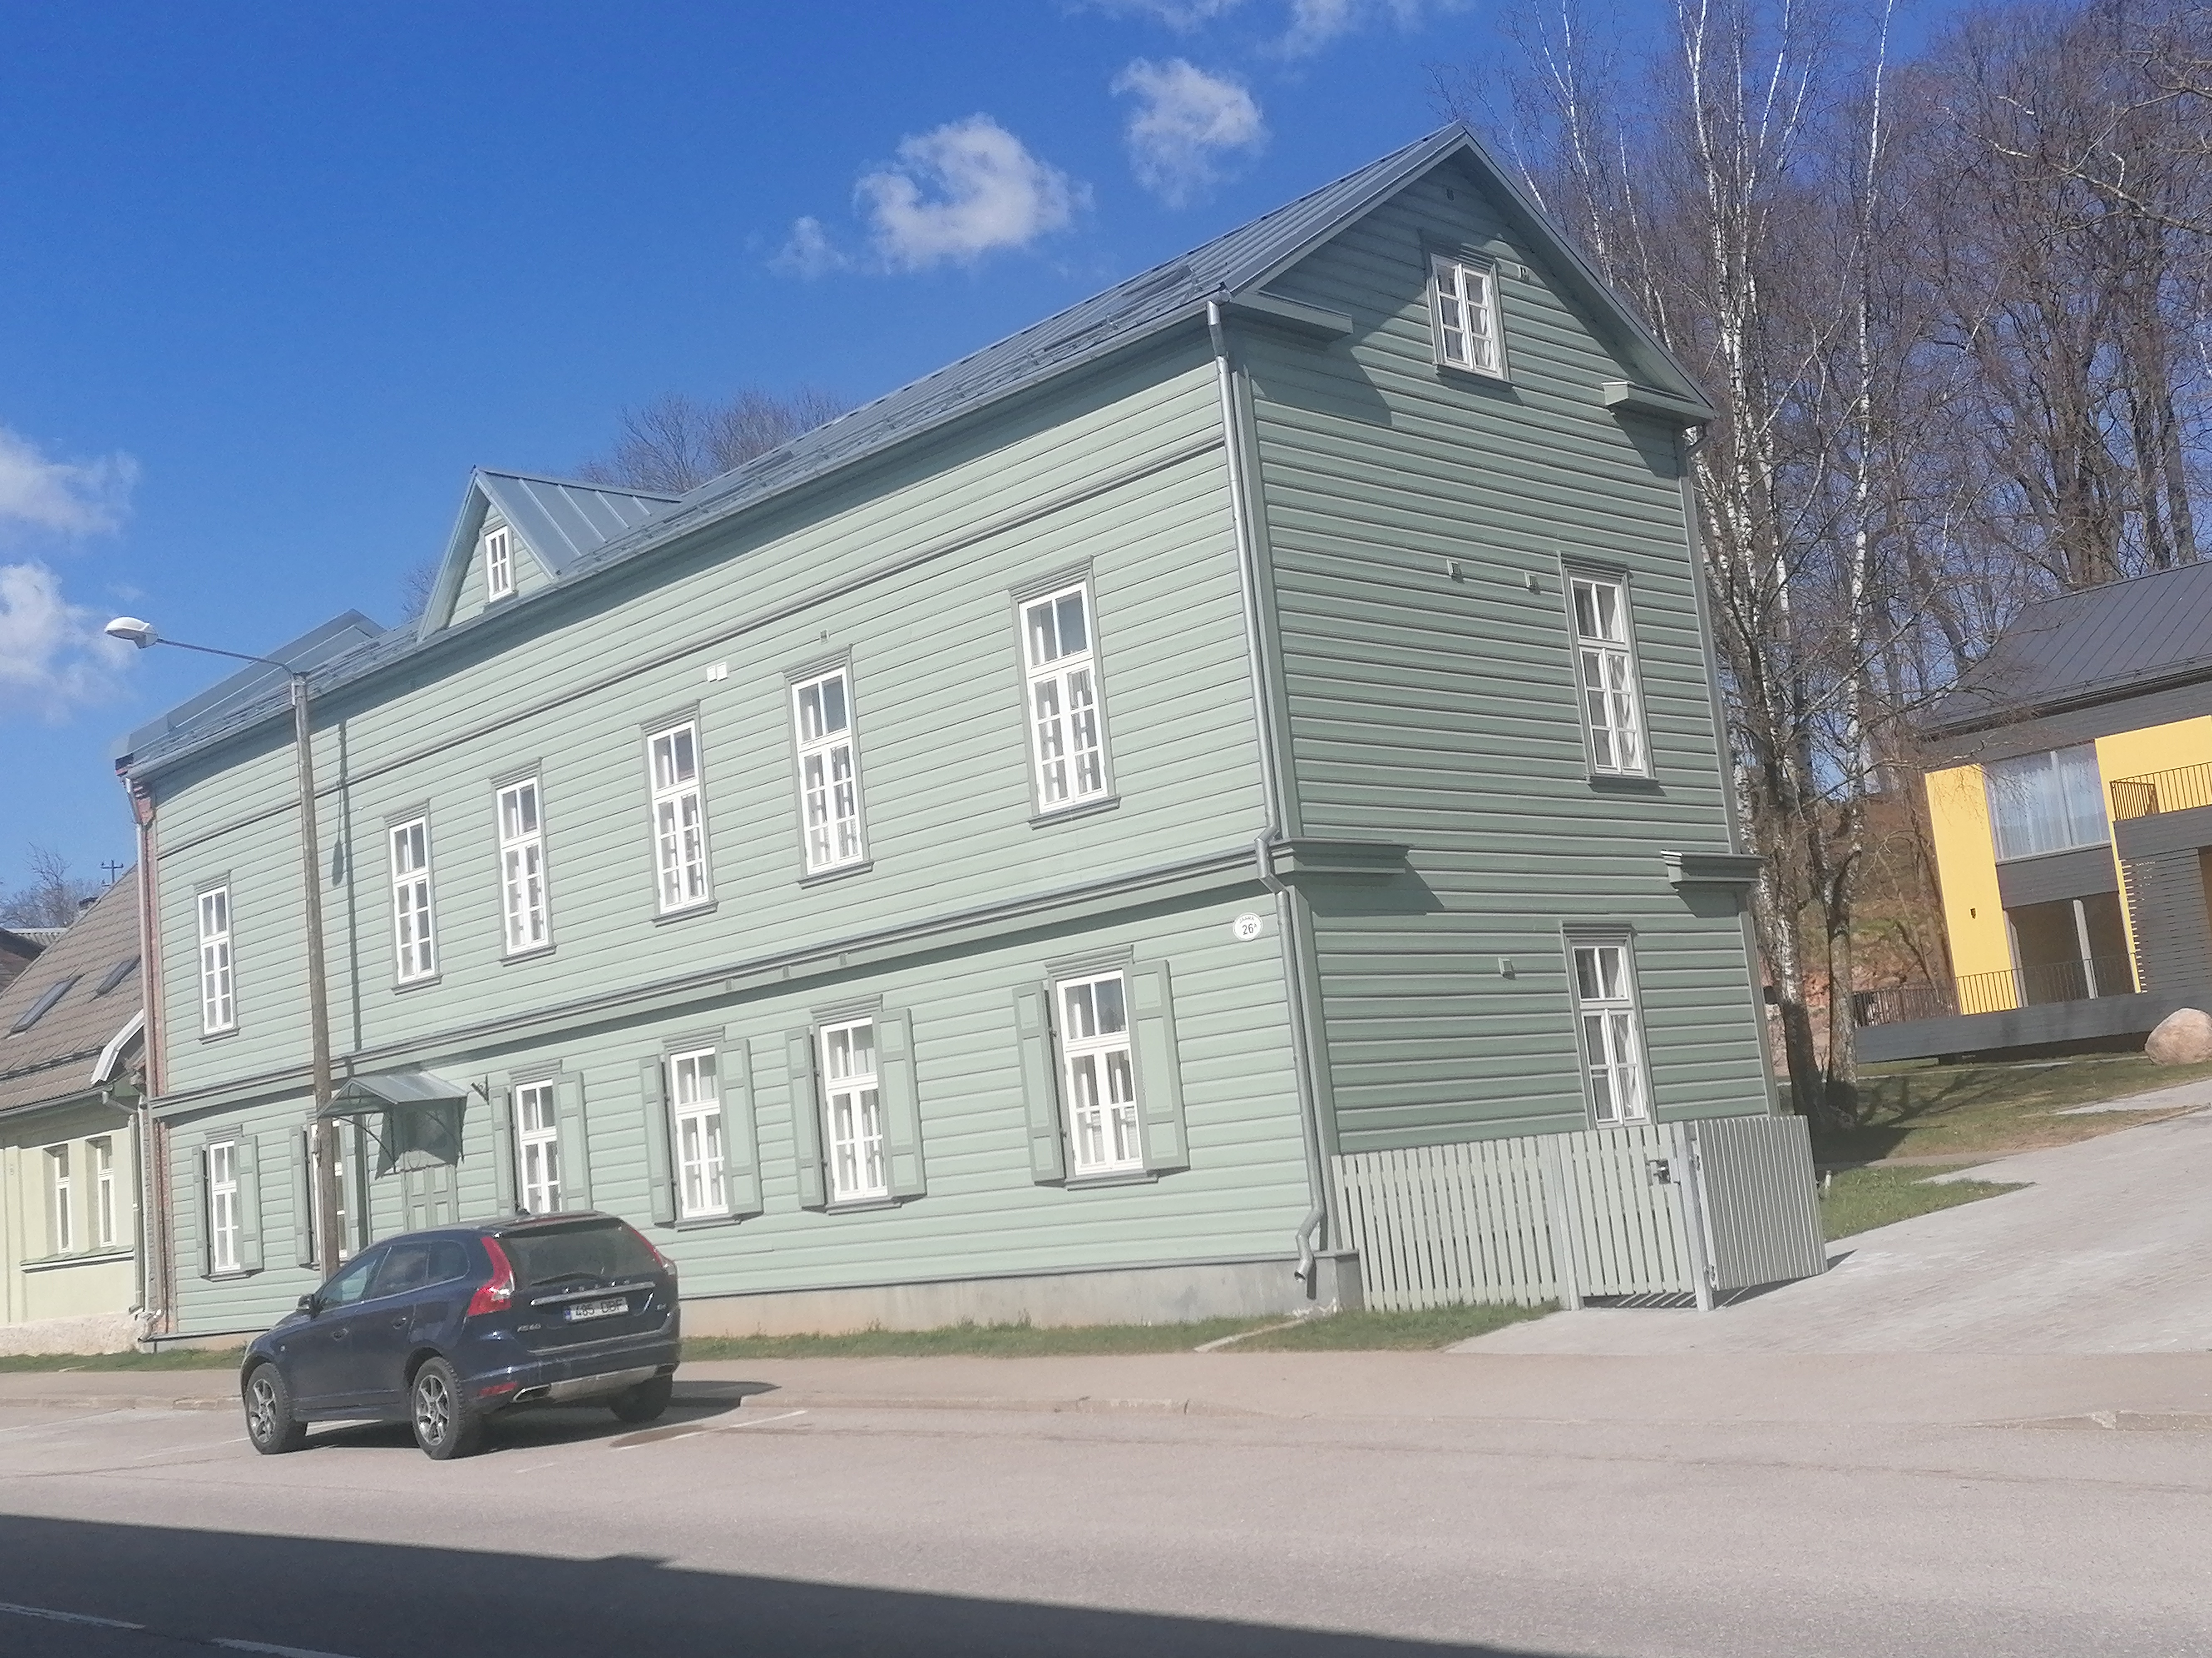 Endine ühekordne Eesti Kirjameeste Seltsi maja Tartus Jaama tänav 26, praegusel ümberehitatud kujul rephoto